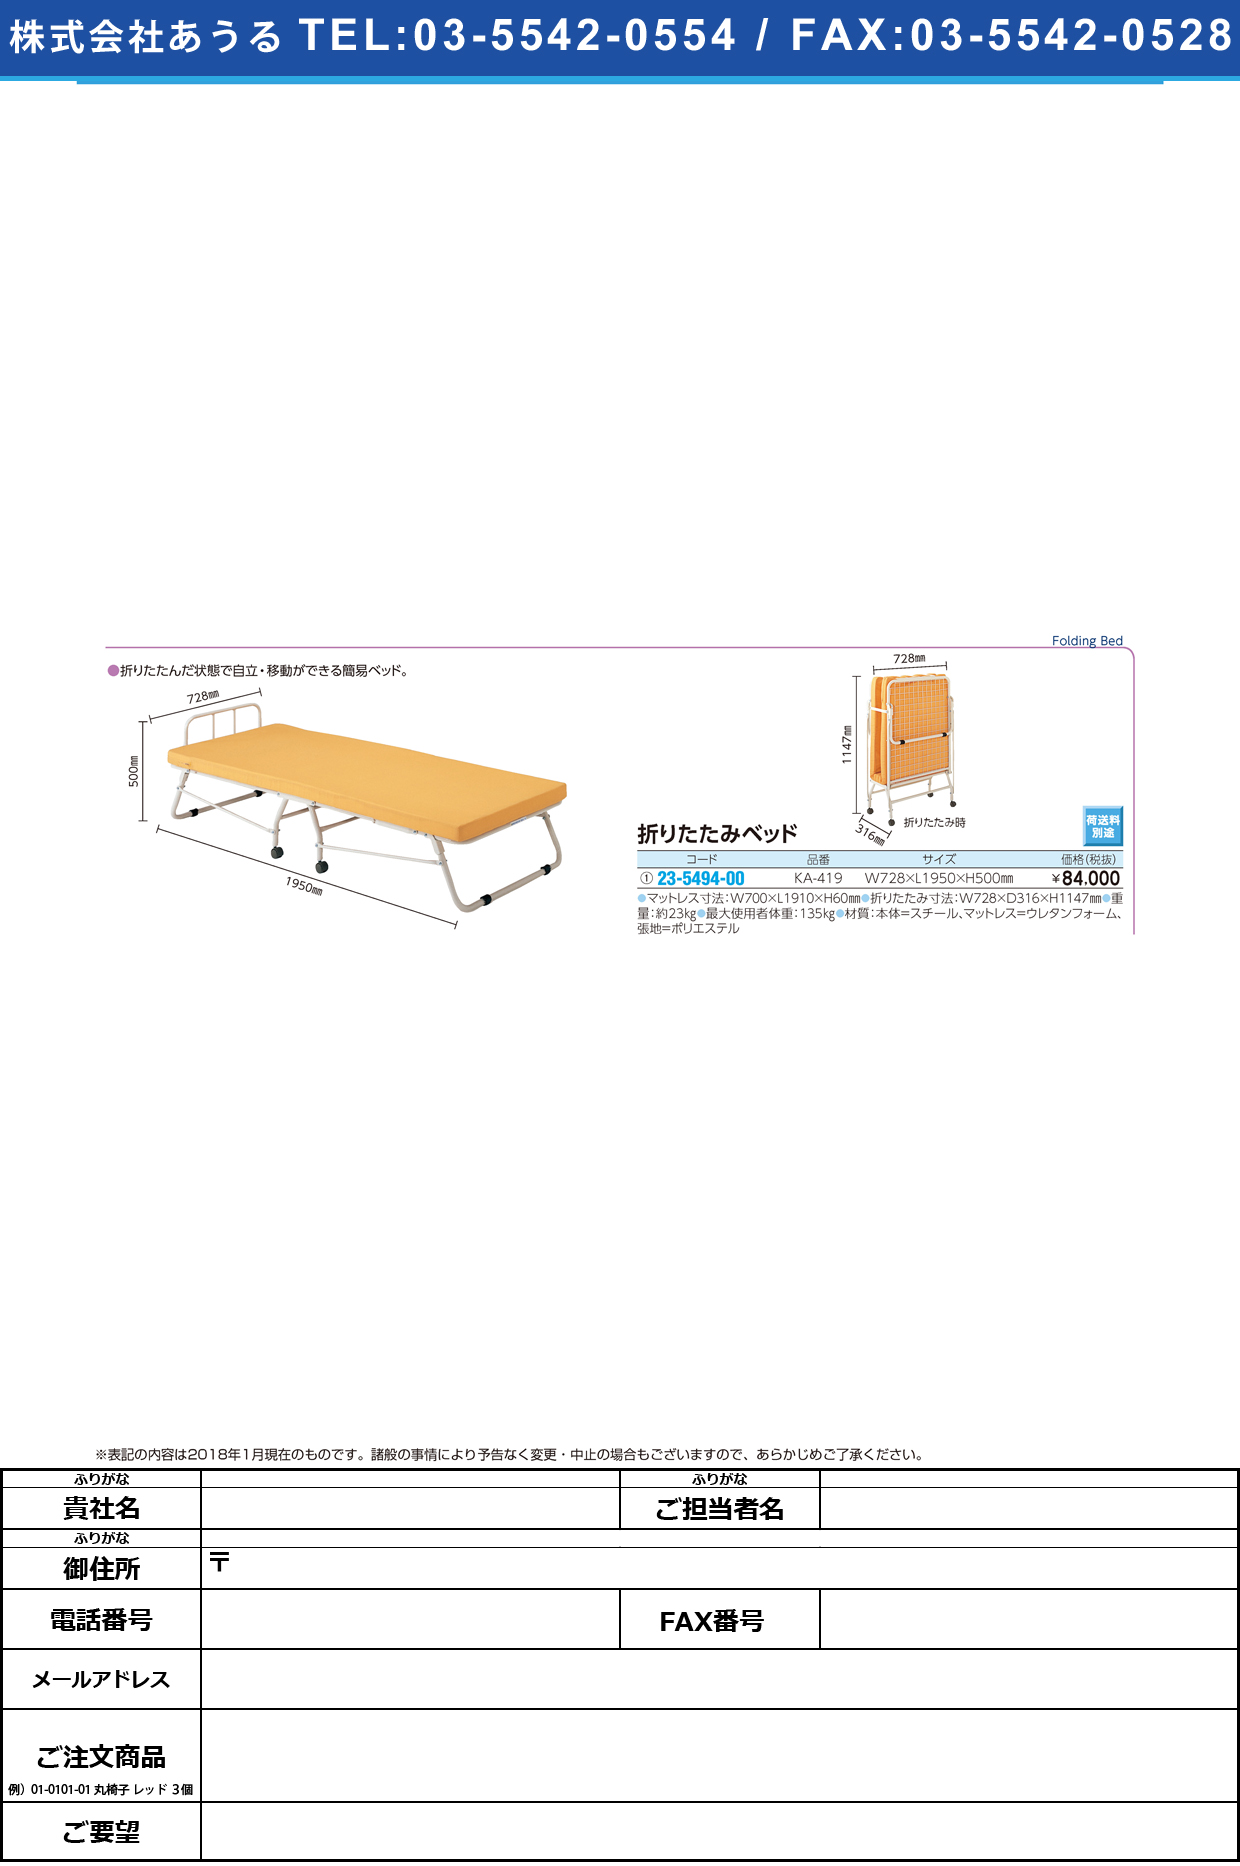 (23-5494-00)折りたたみ式ベッド KA-419 ｵﾘﾀﾀﾐｼﾍﾞｯﾄﾞ(パラマウントベッド)【1台単位】【2018年カタログ商品】